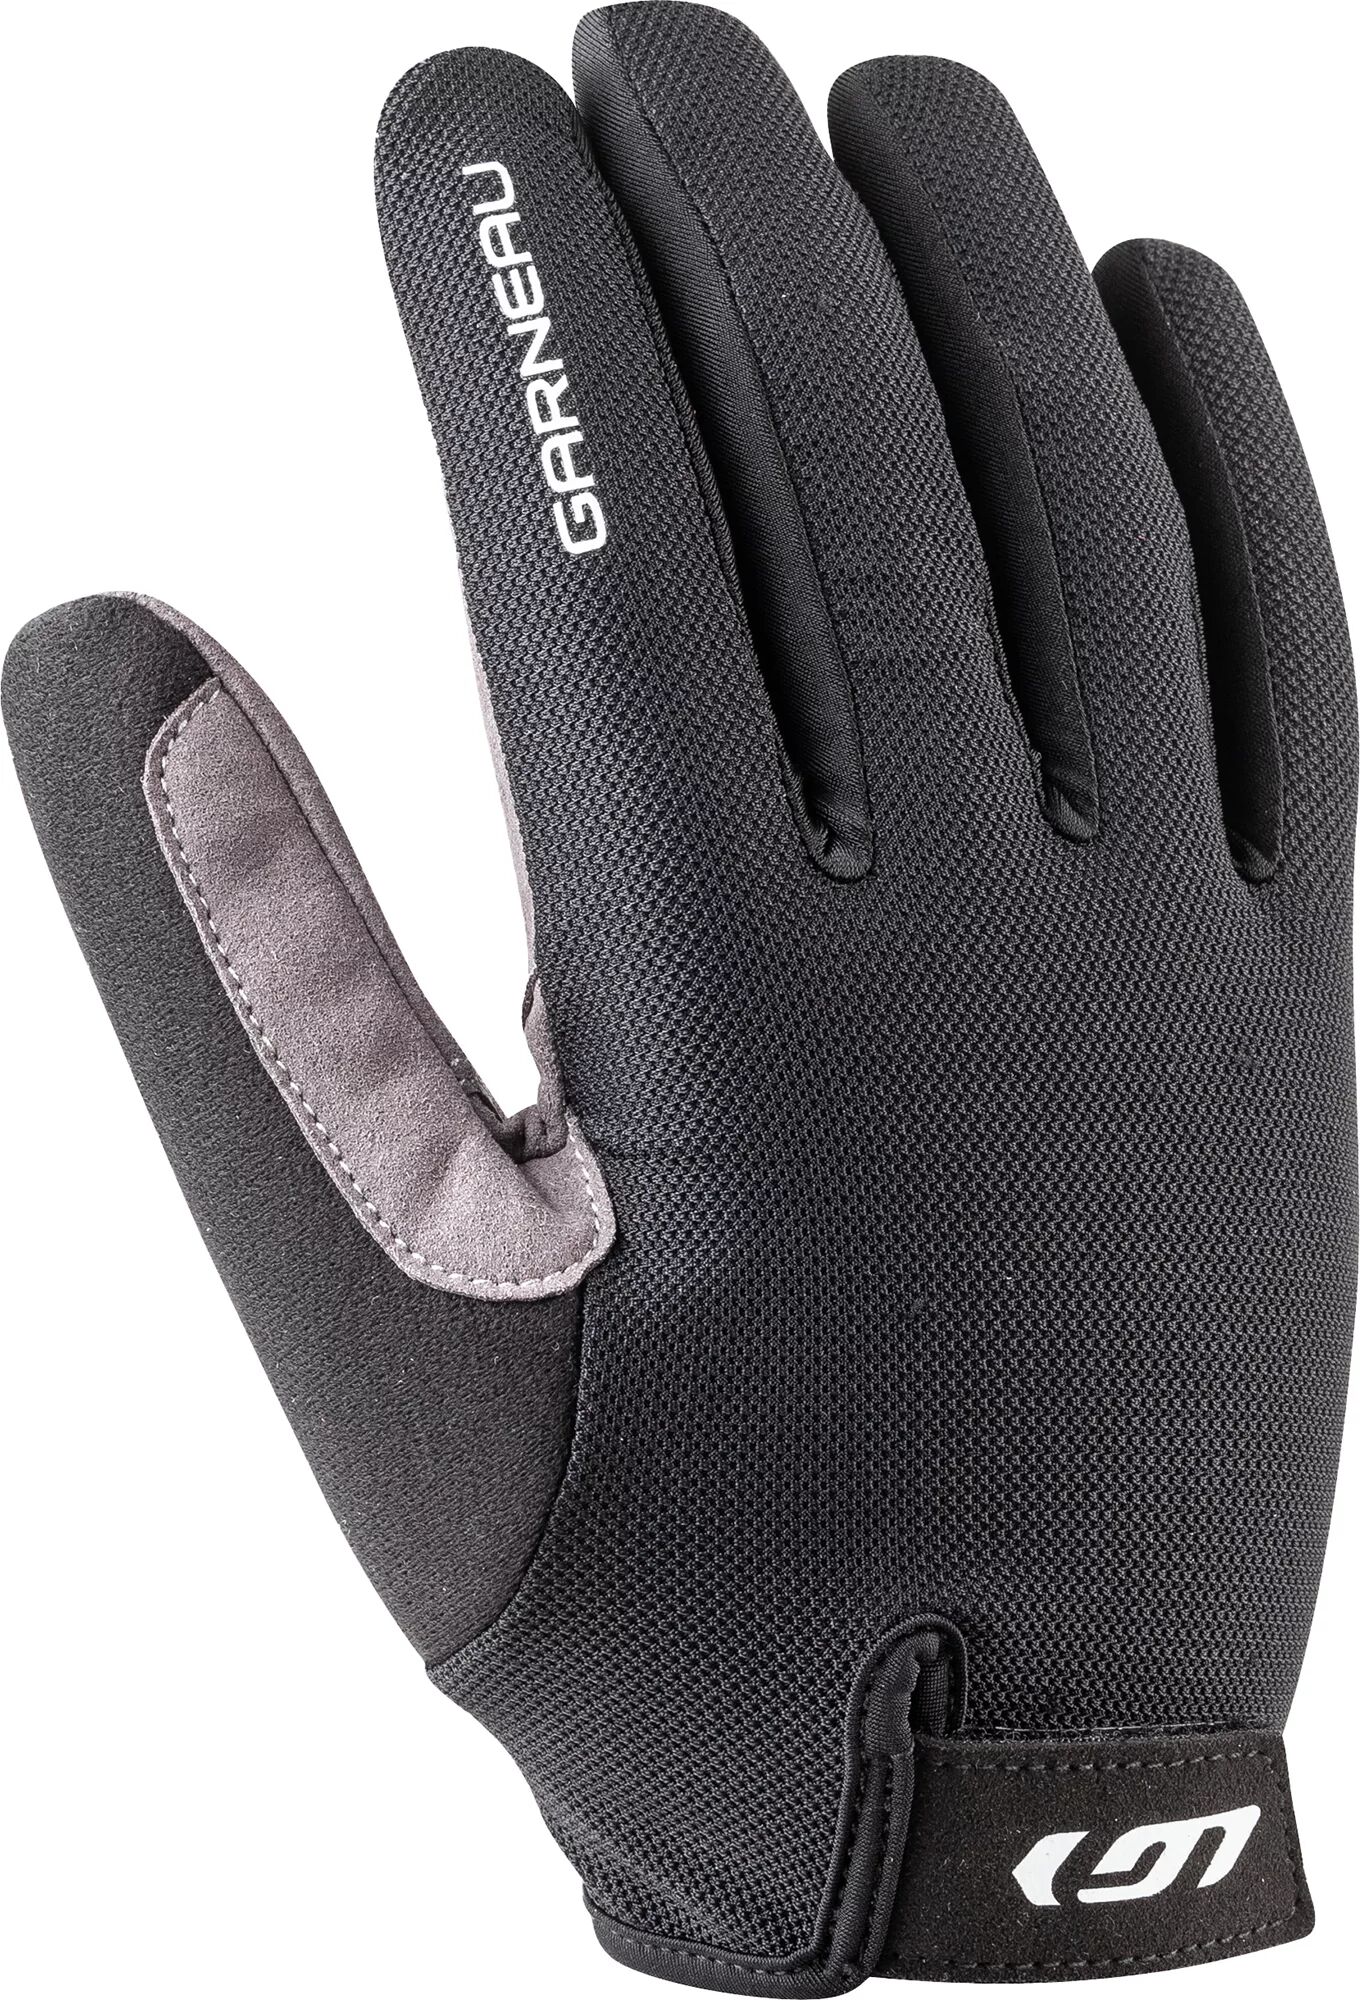 Louis Garneau Men's Long Calory Bike Gloves, XL, Black